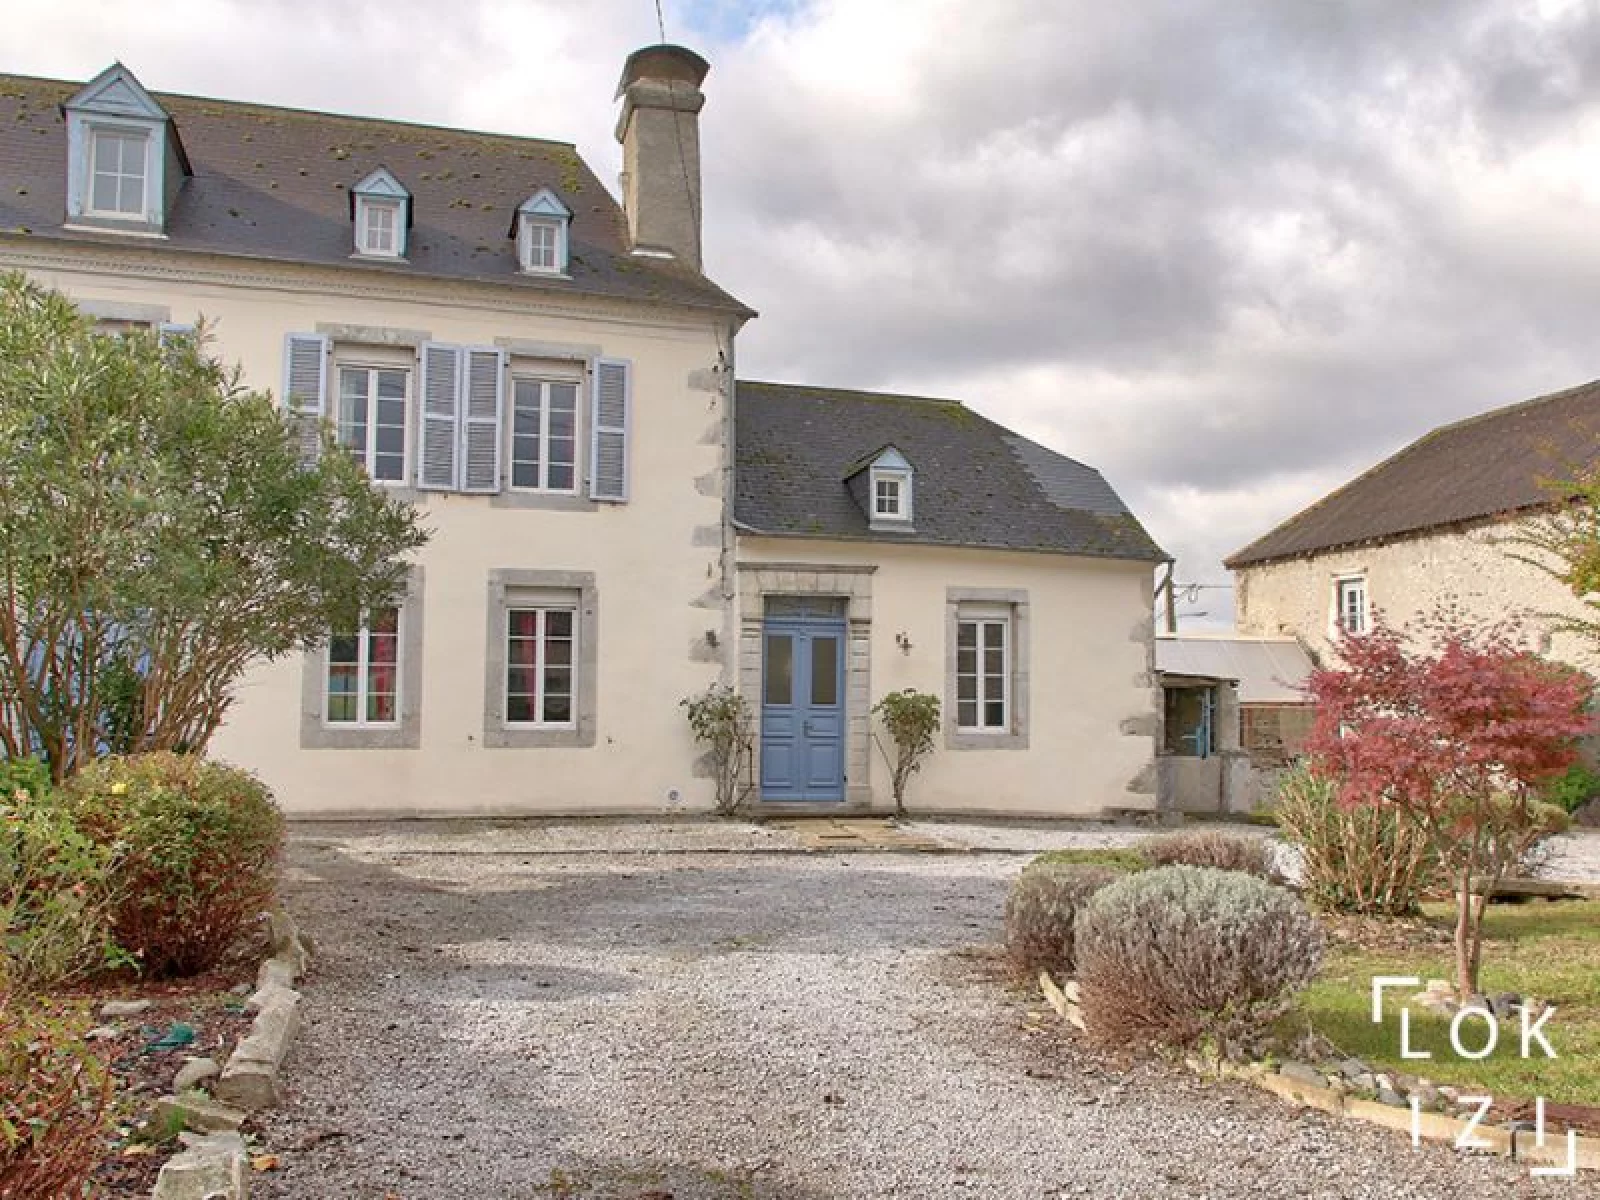 Location maison meuble 235m, 4 chambres, jardin et piscine (Bordes - Pau 64)